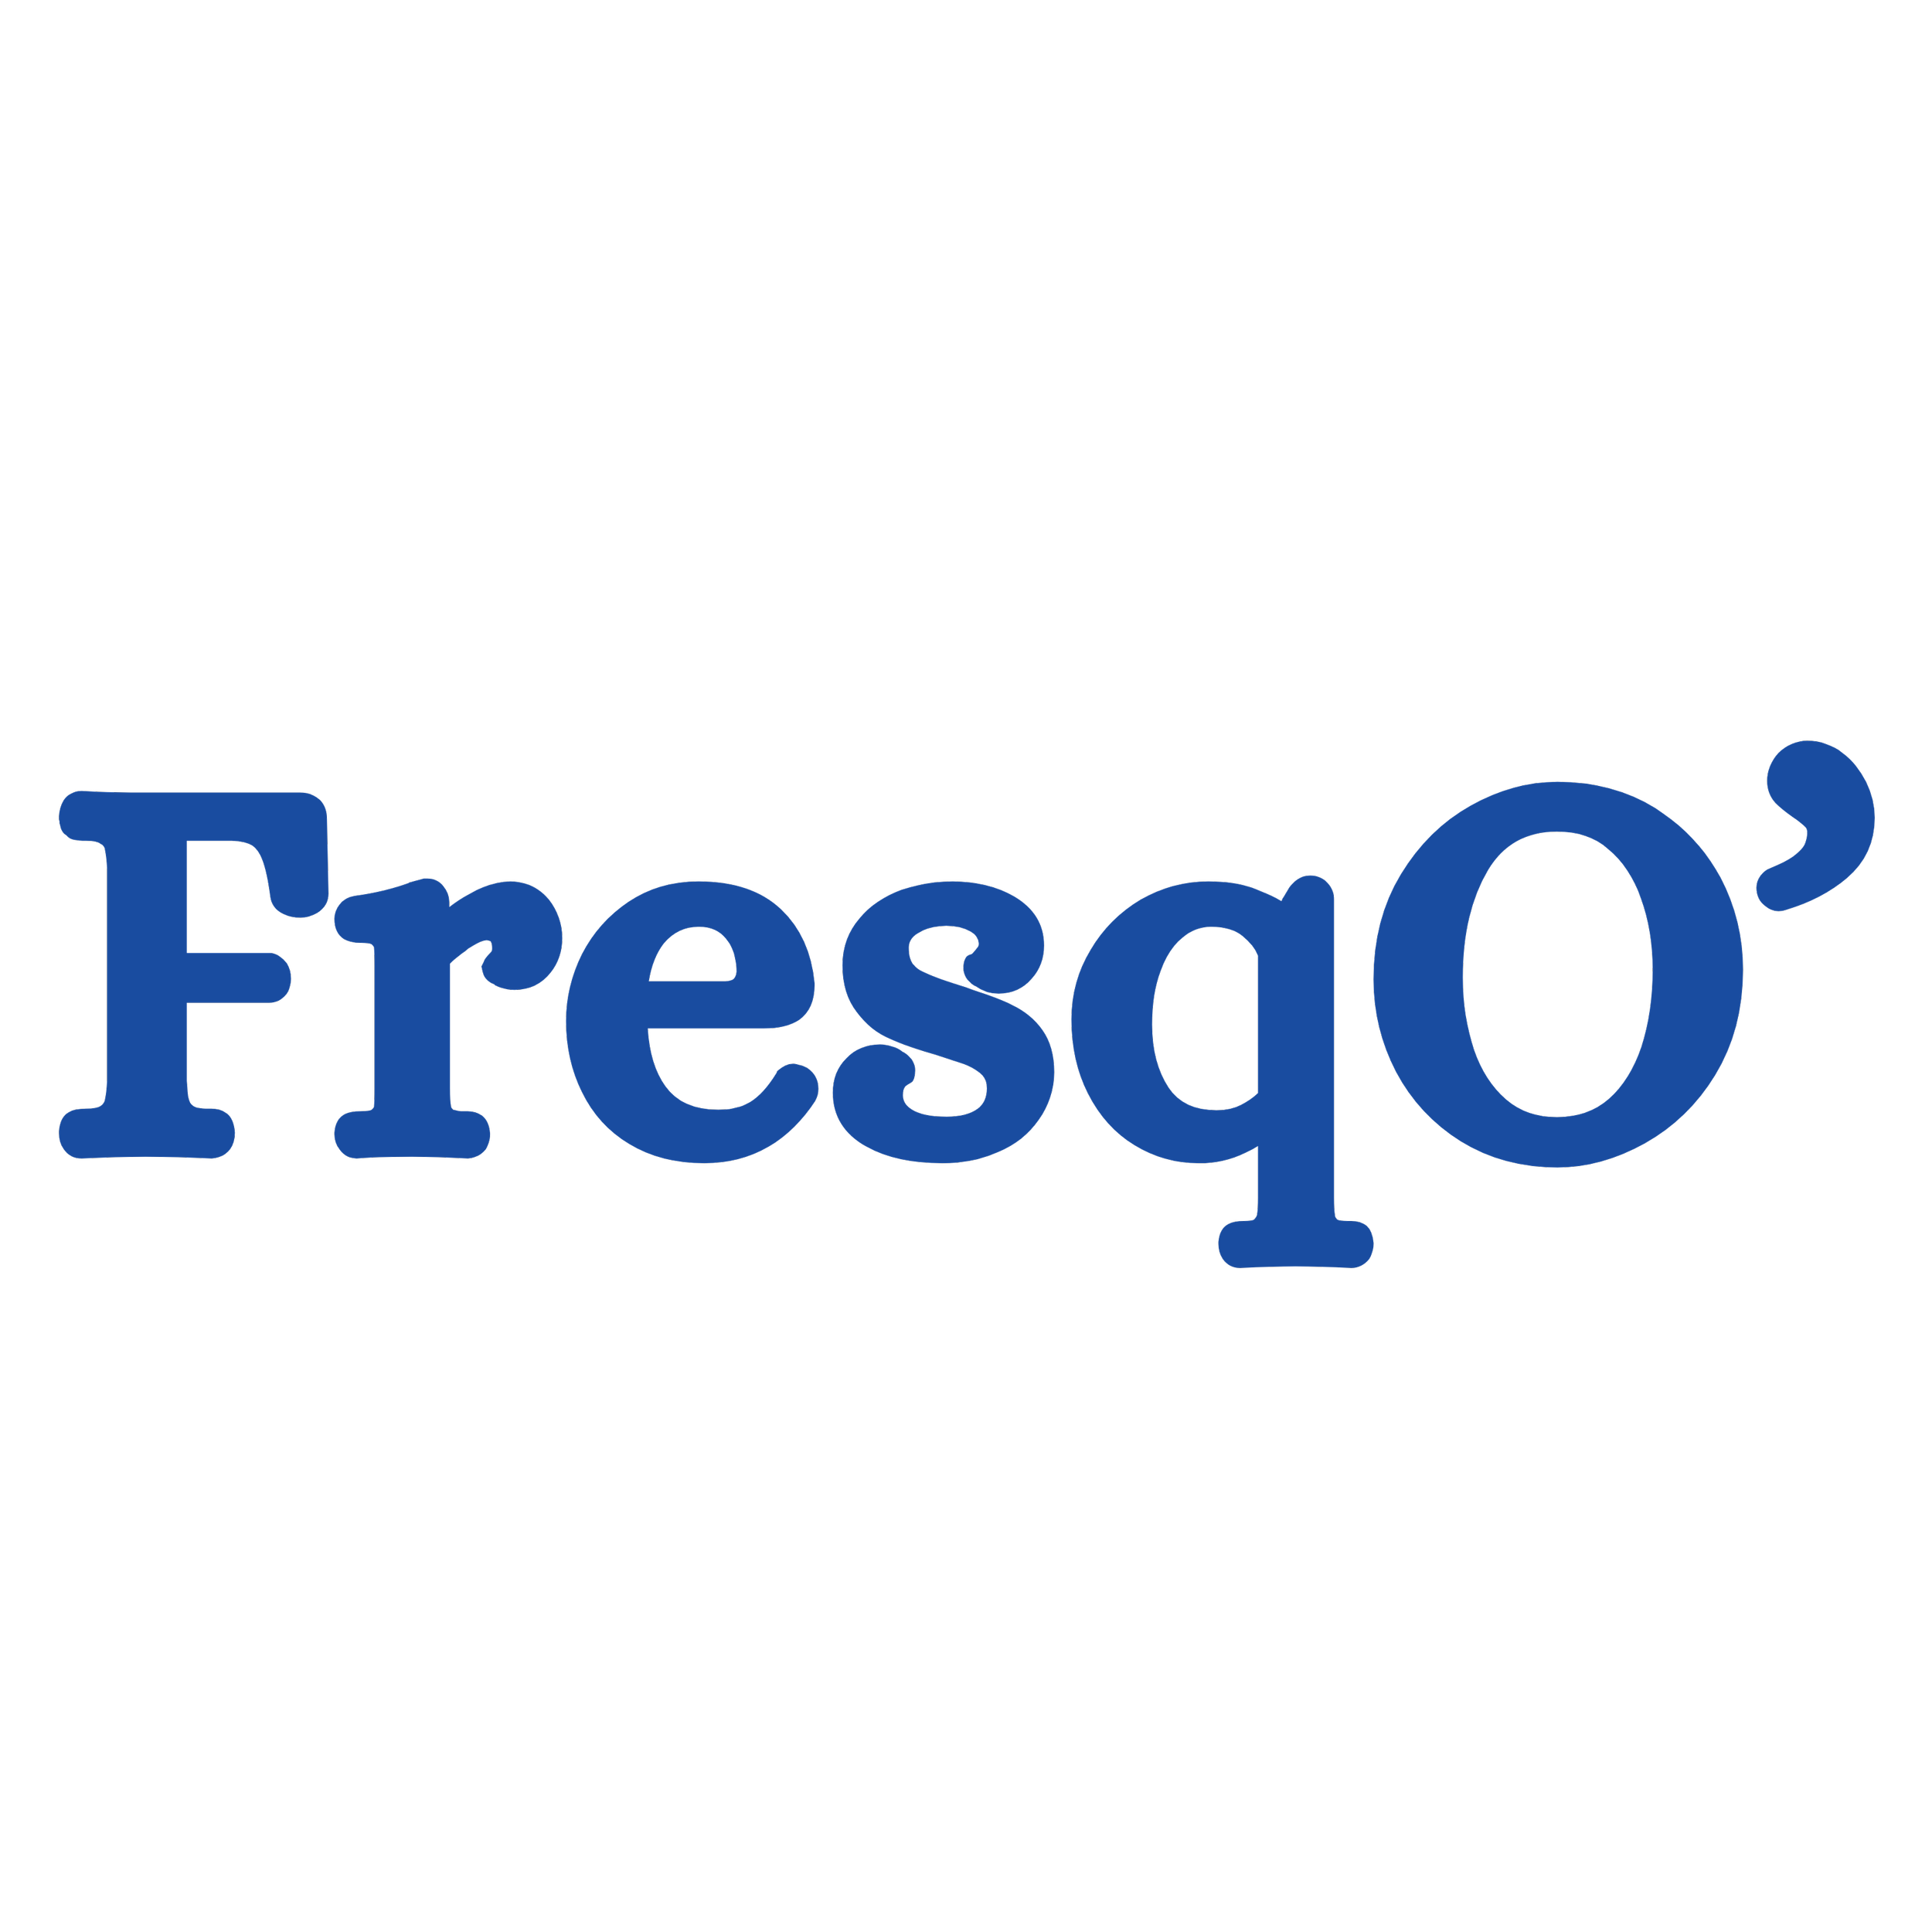 FresqO’-2.png